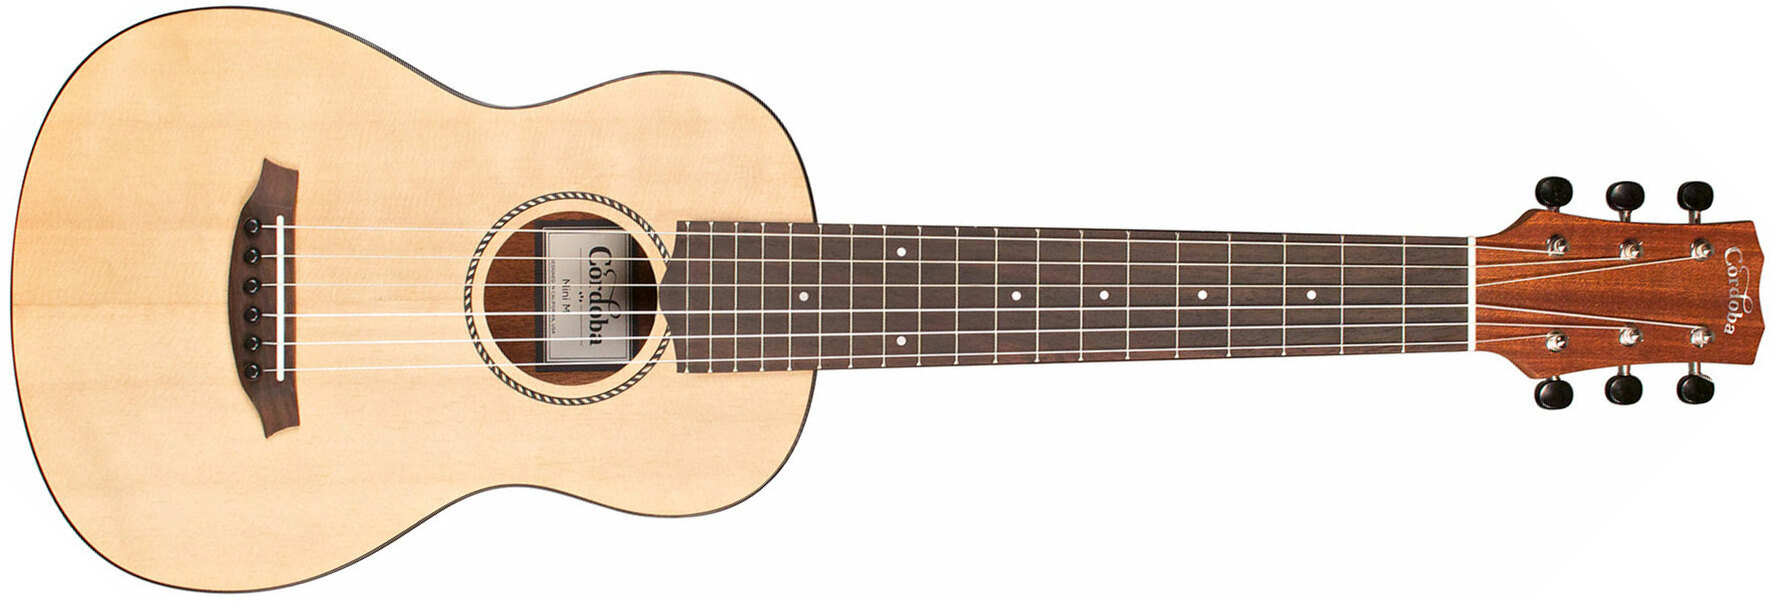 Mini M +Bag - natural Classical guitar 3/4 size Cordoba